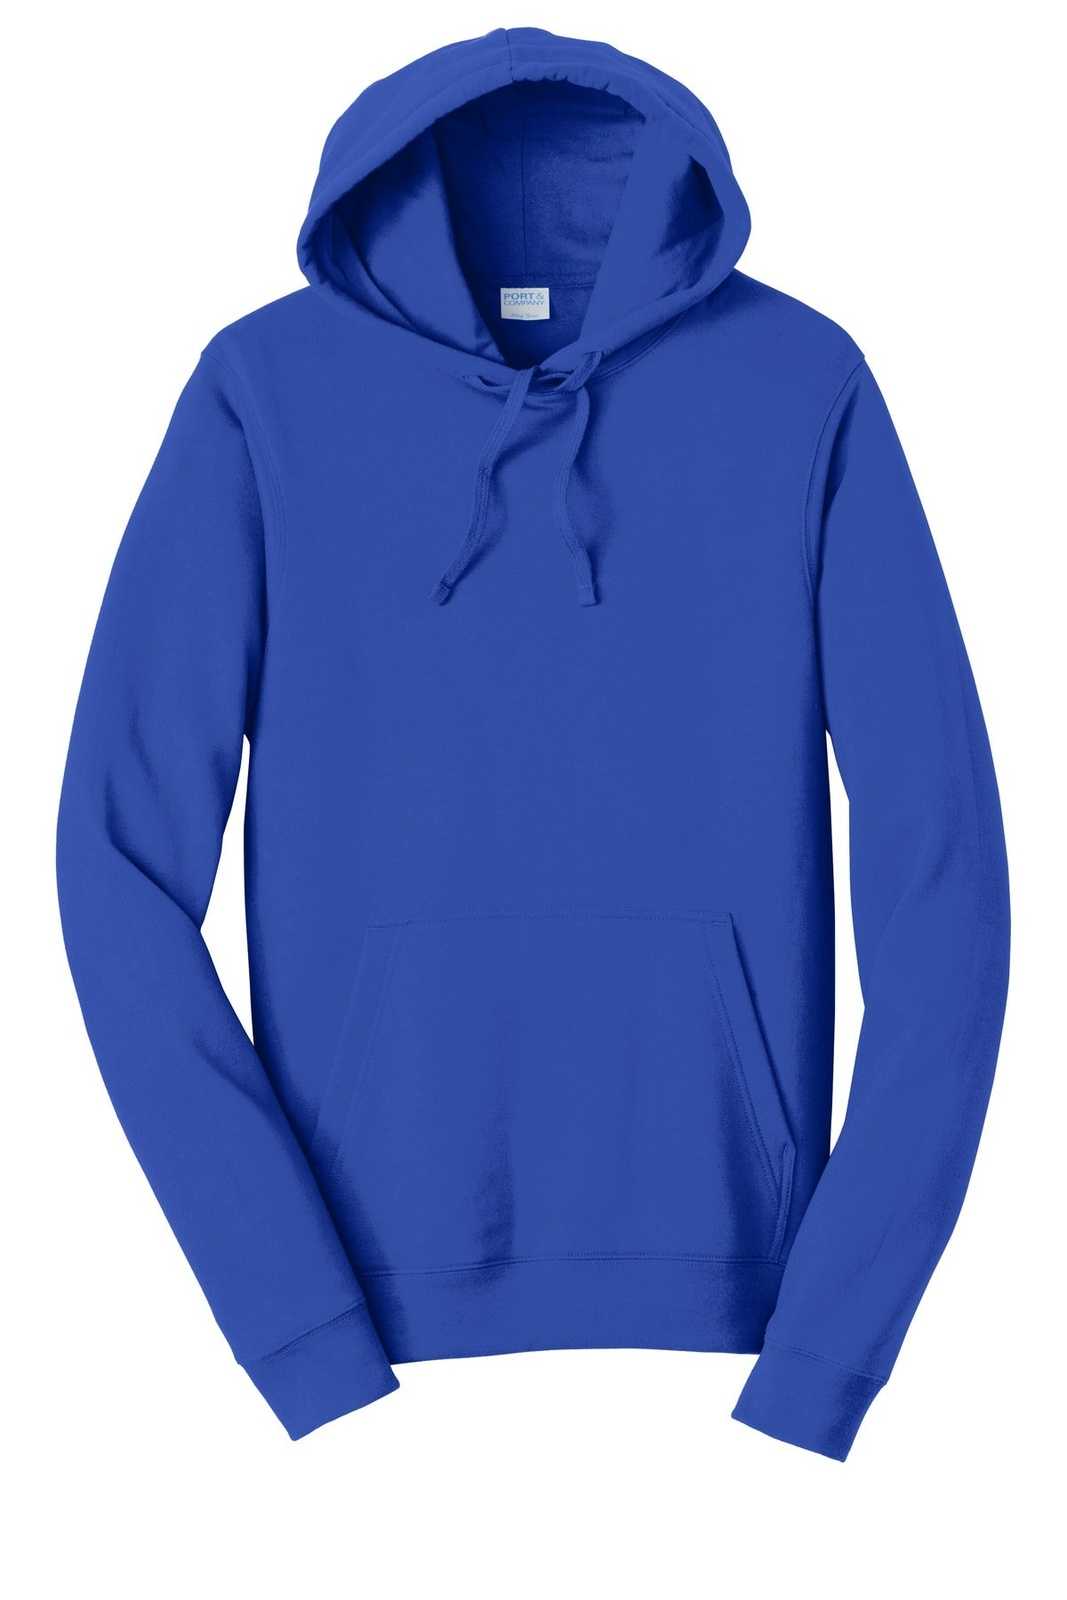 Port &amp; Company PC850H Fan Favorite Fleece Pullover Hooded Sweatshirt - True Royal - HIT a Double - 5